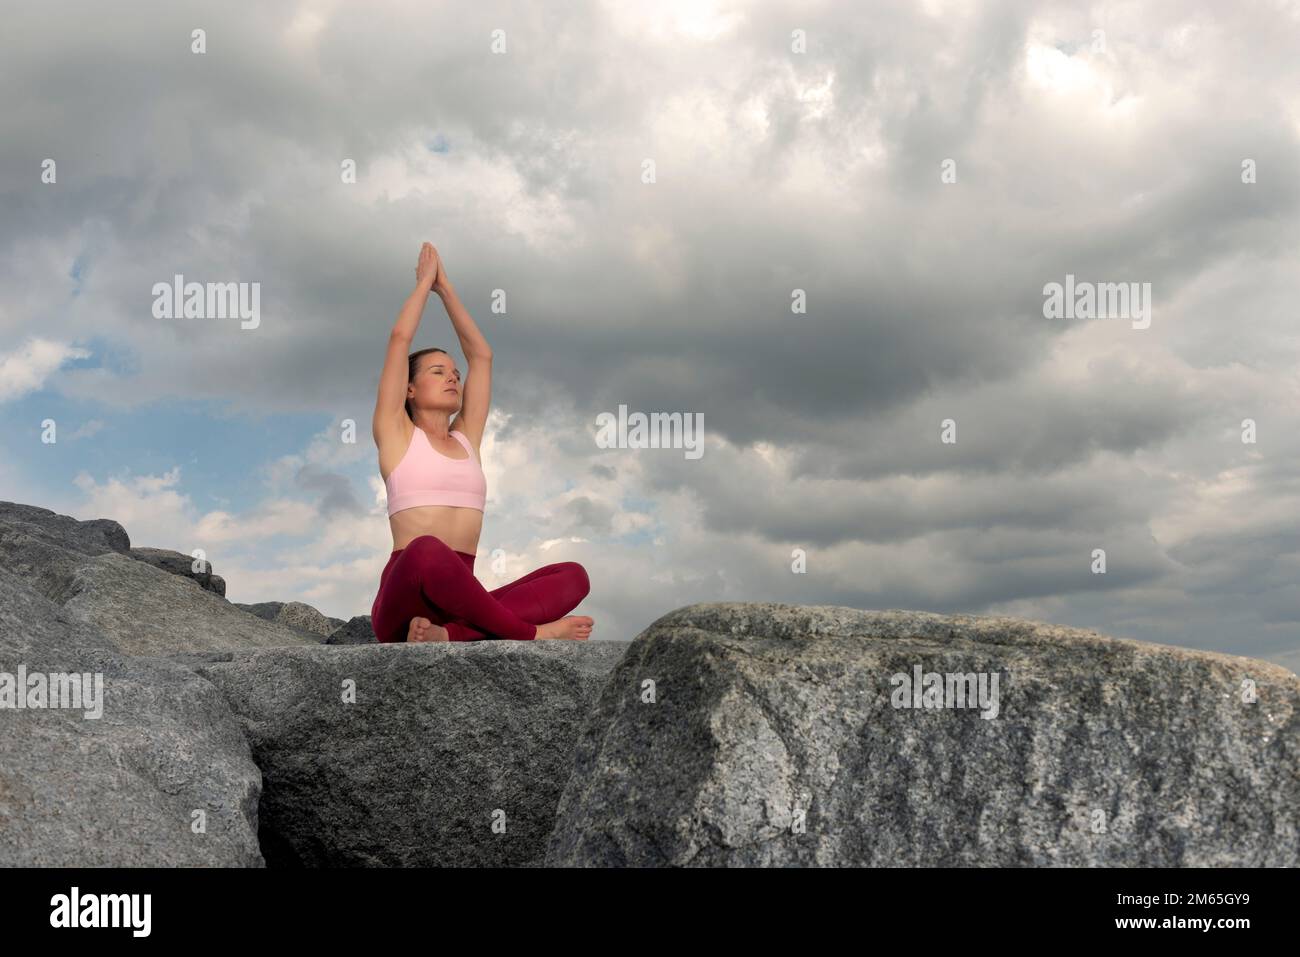 Mujer deportiva sentada con piernas cruzadas en rocas meditando y practicando yoga, cielo dramático. Foto de stock